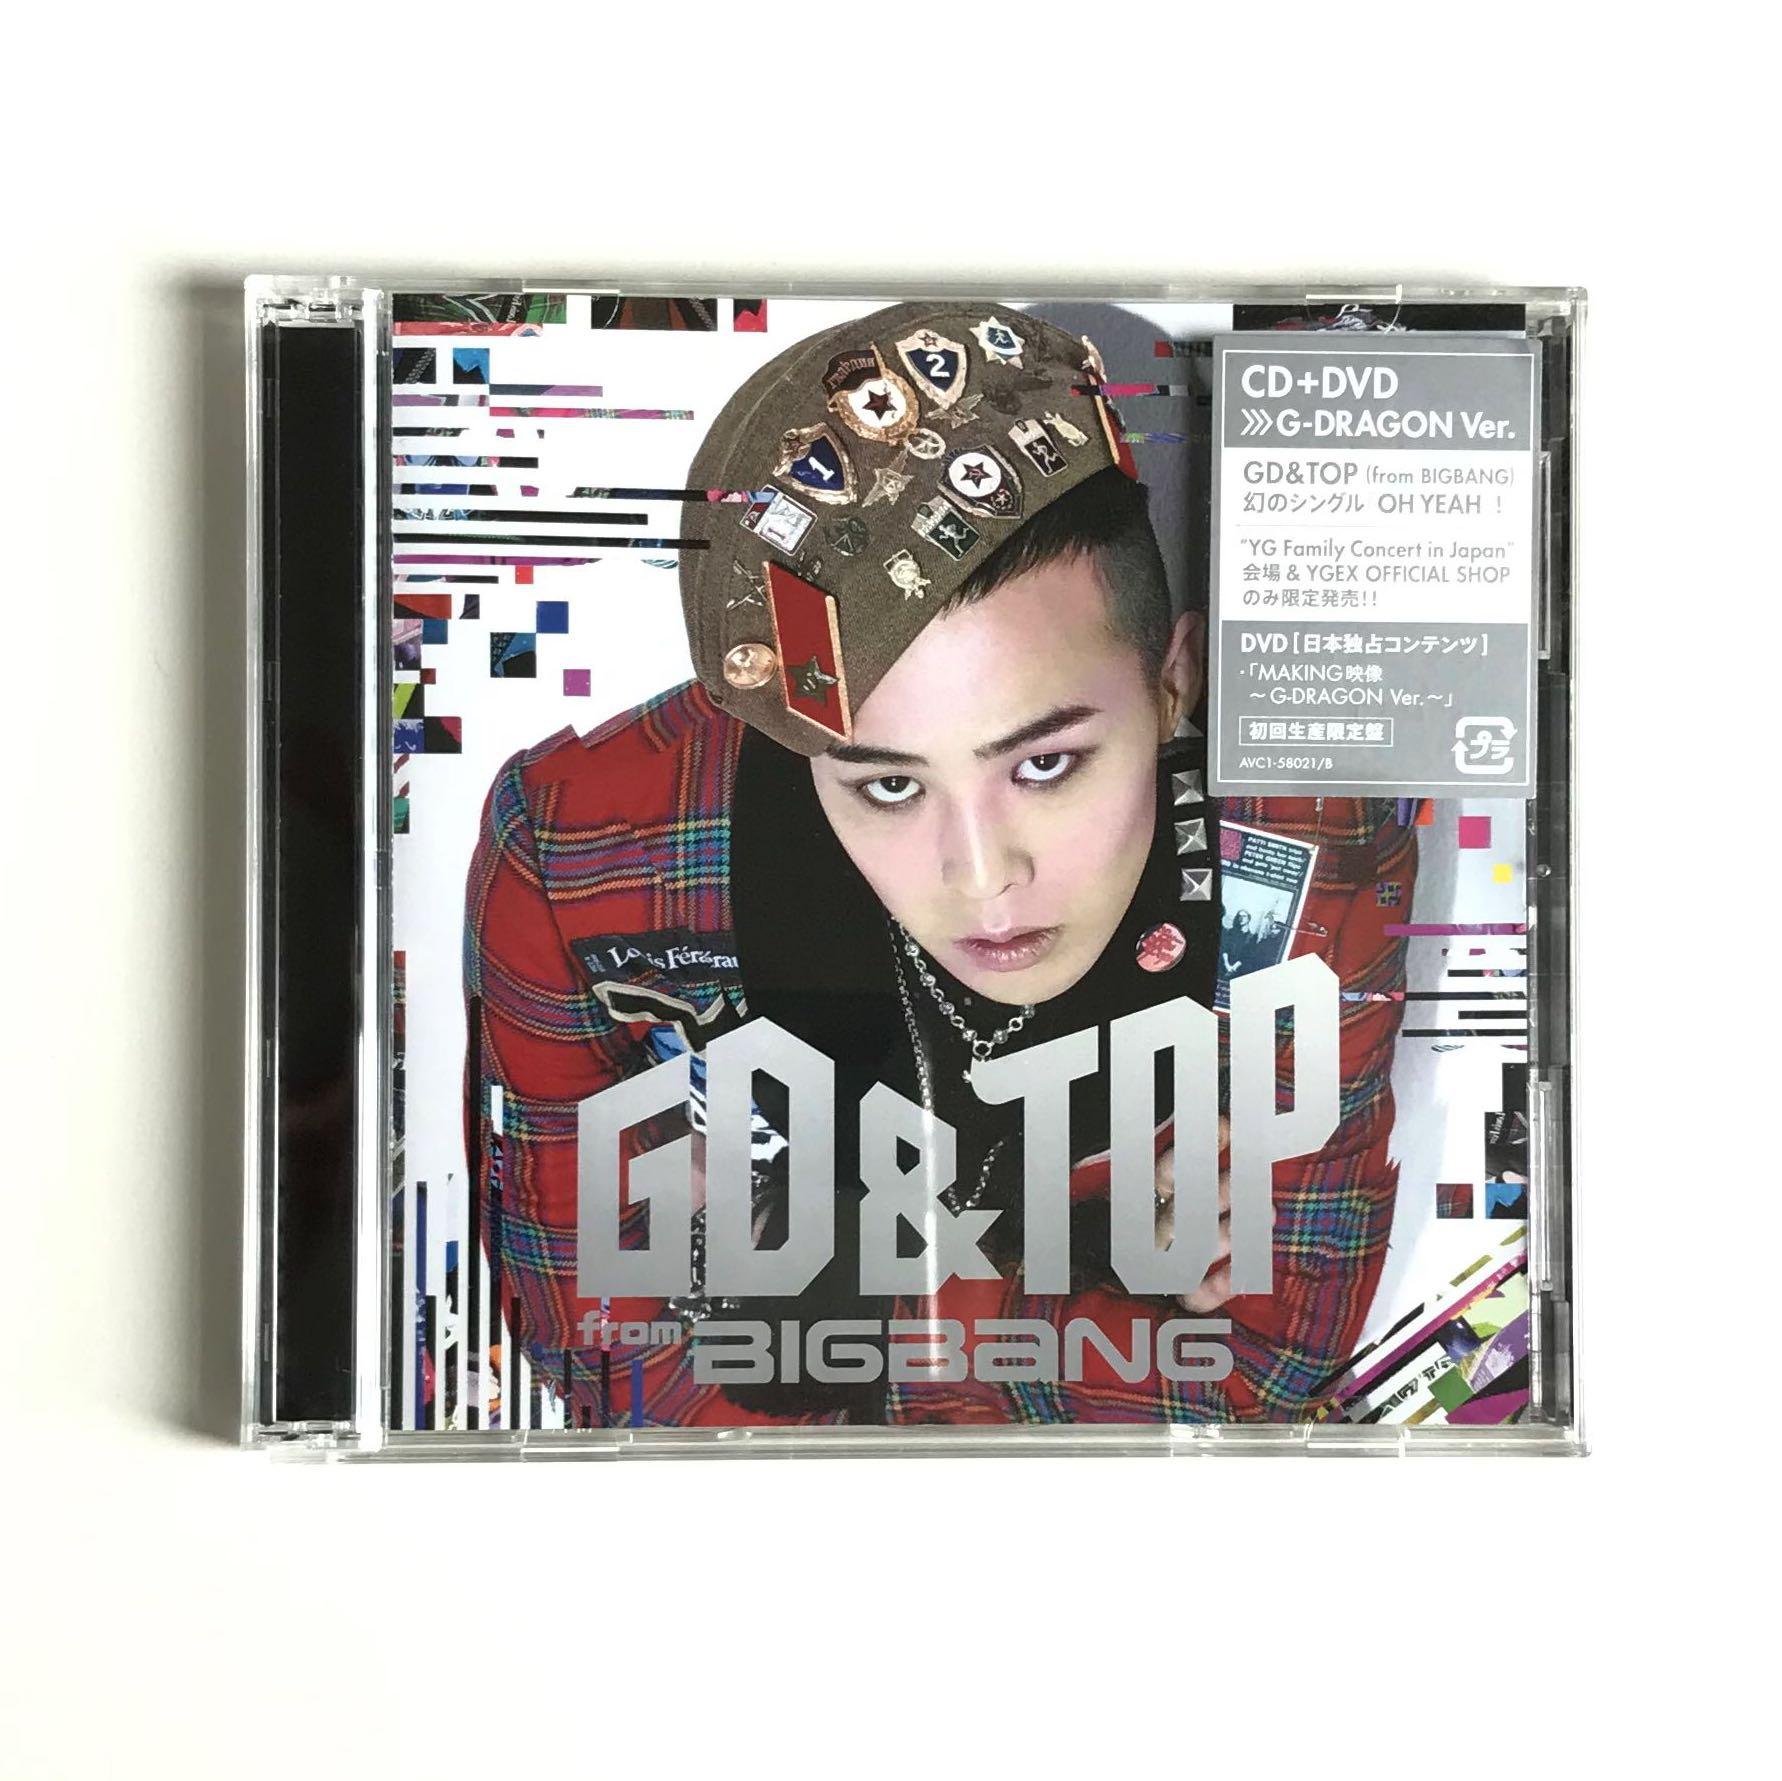 GD & TOP』G-DRAGON Ver. 〈初回生產限定盤〉(CD + DVD + Mini Booklet